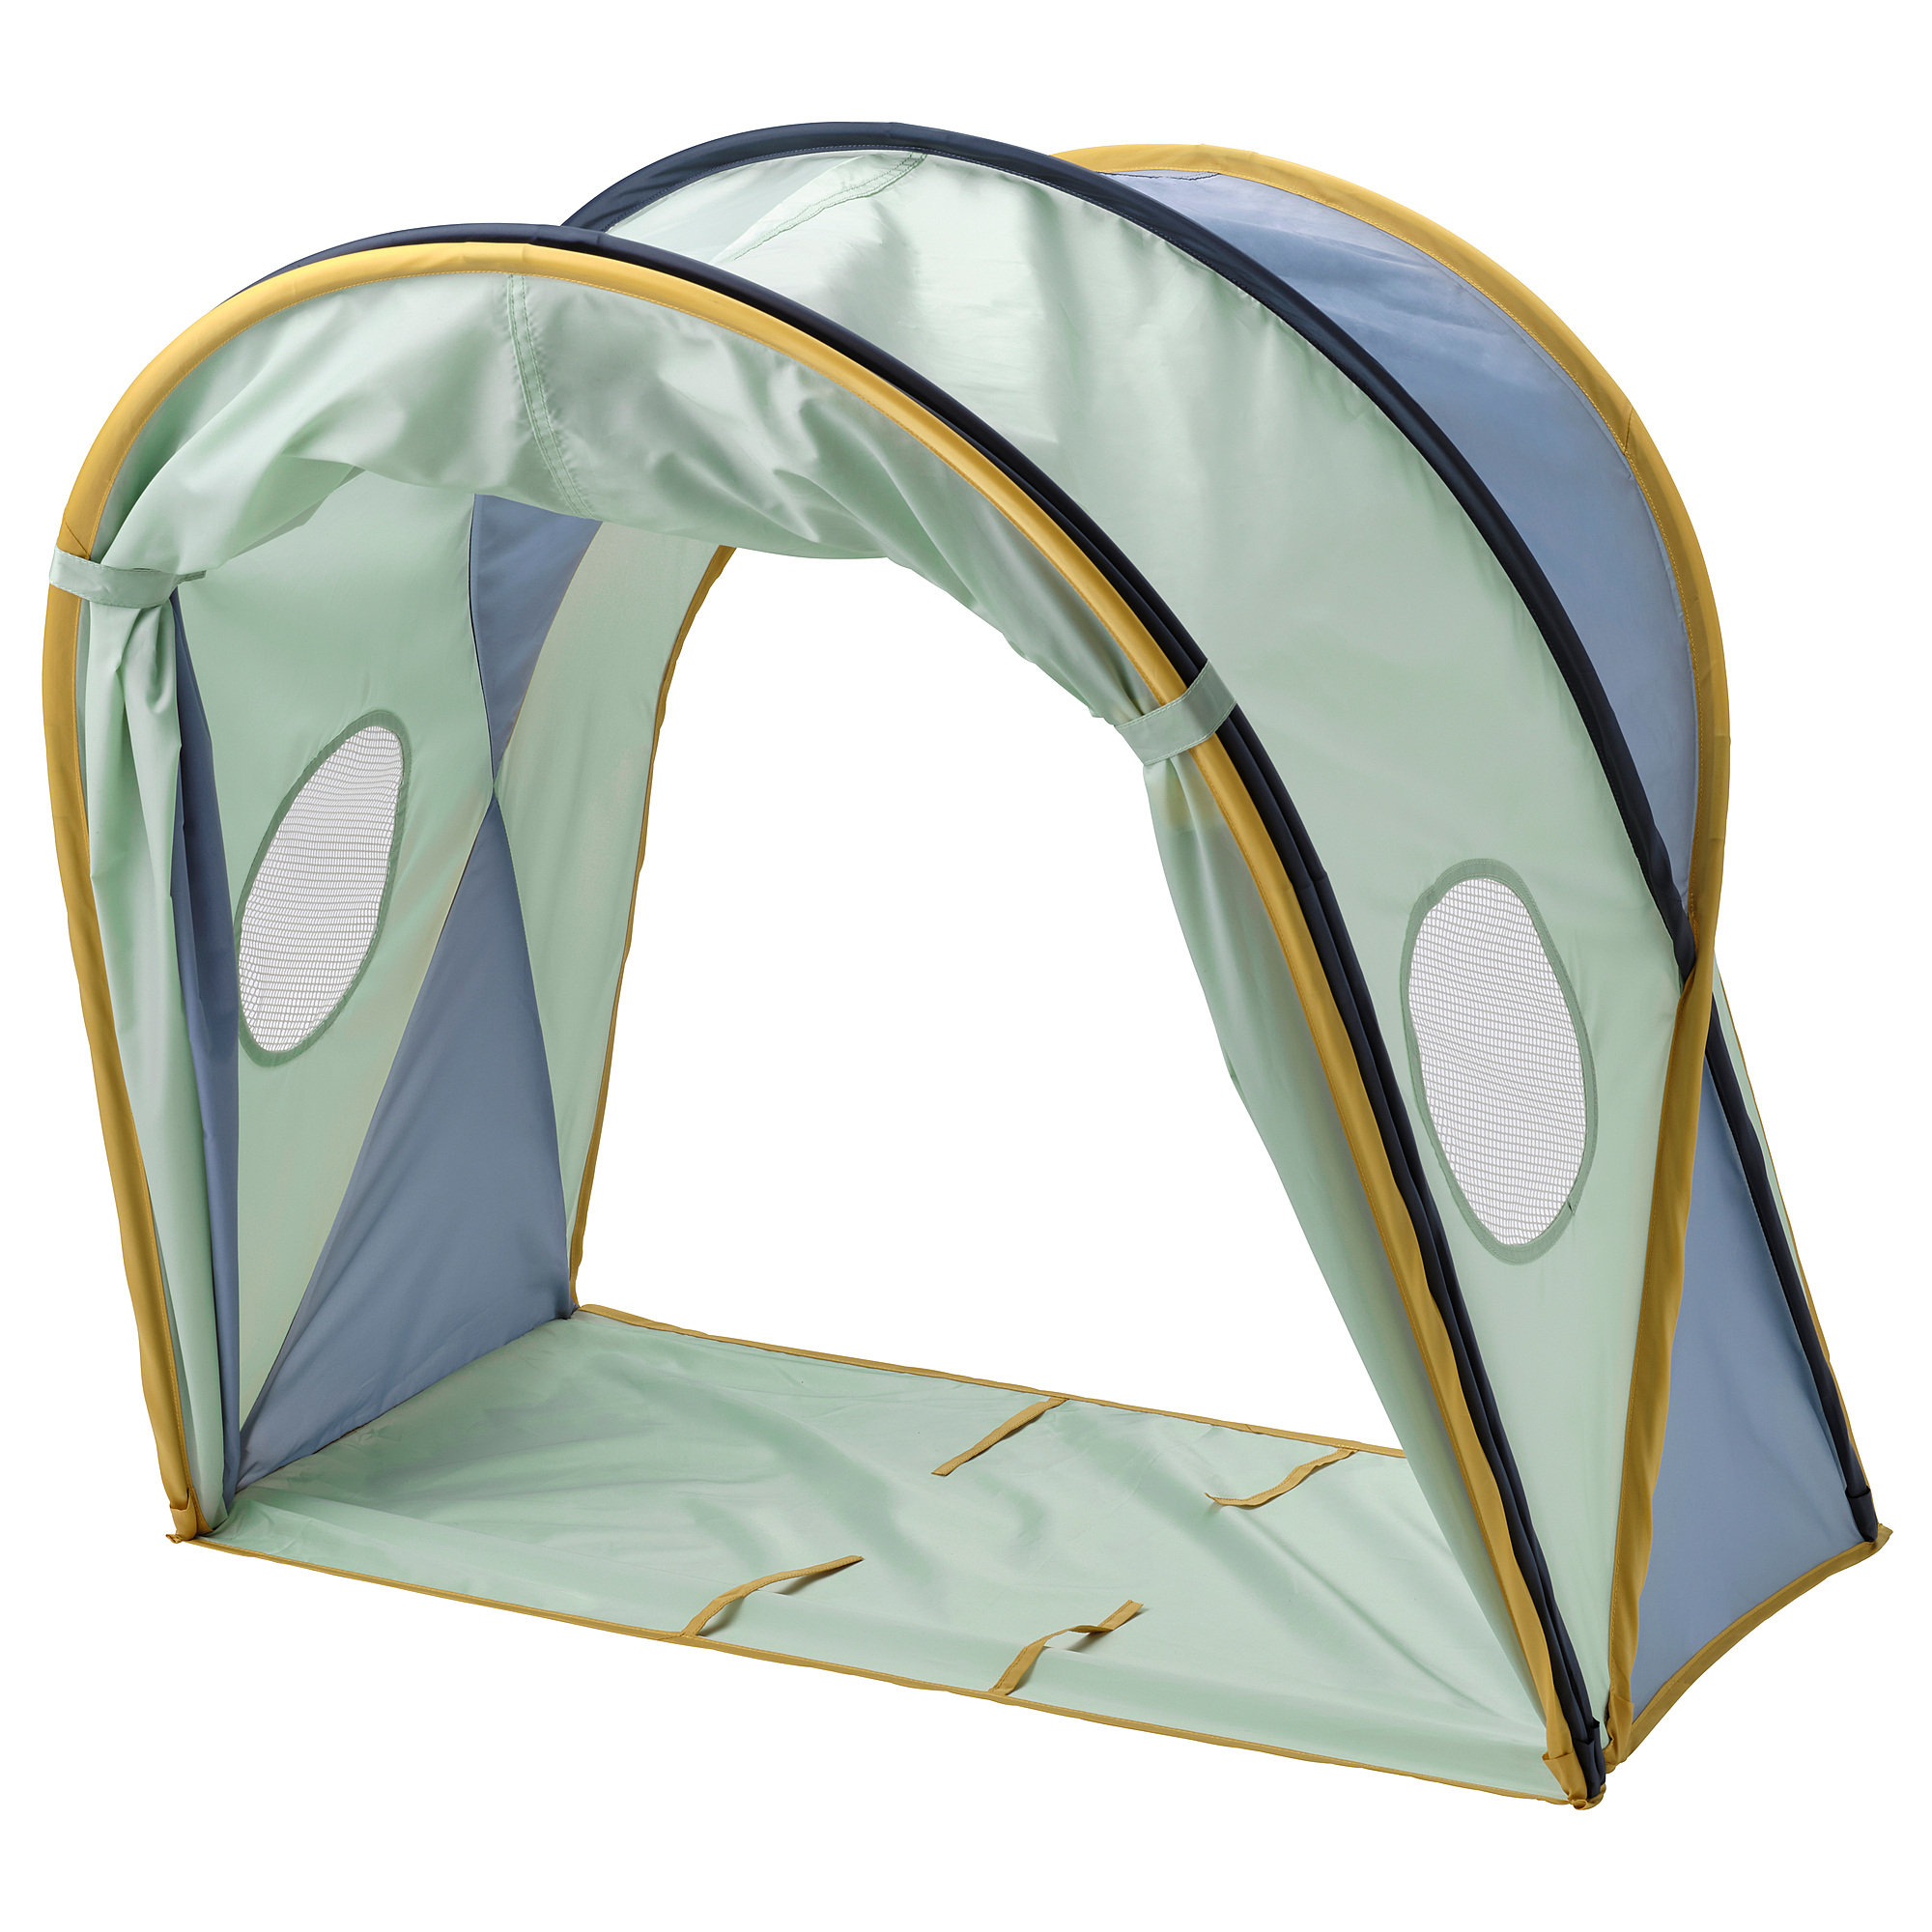 ELDFLUGA bed tent